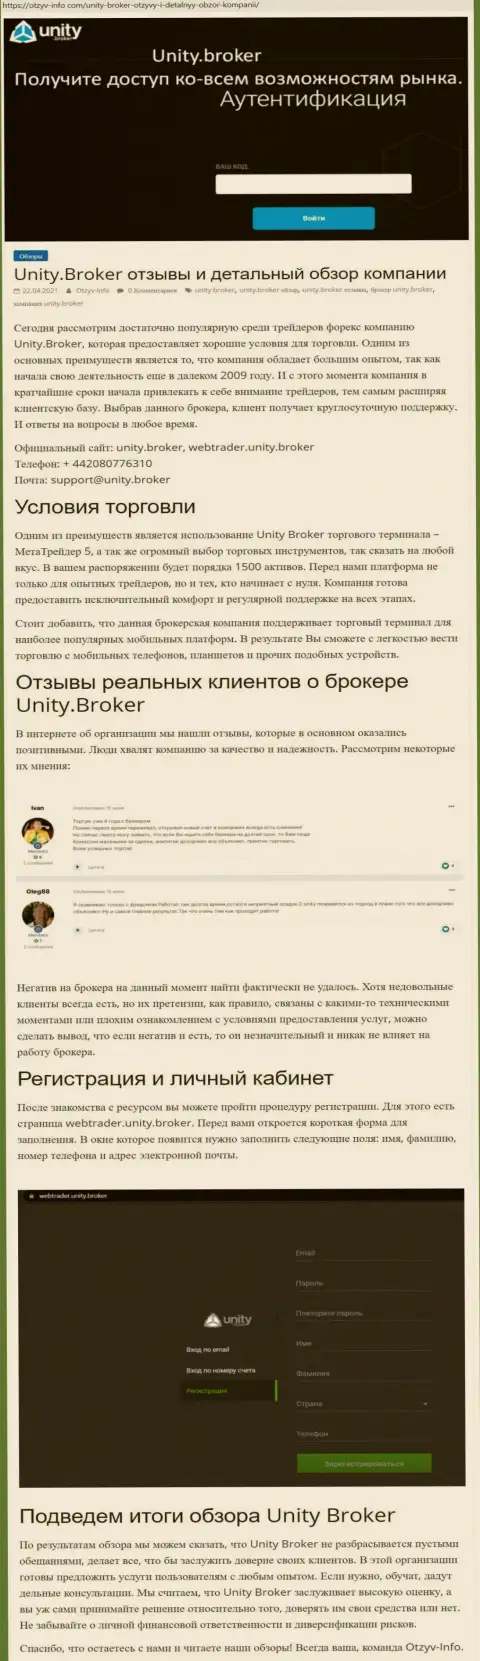 Обзор работы форекс-дилингового центра Юнити Брокер на интернет-ресурсе otzyv-info com